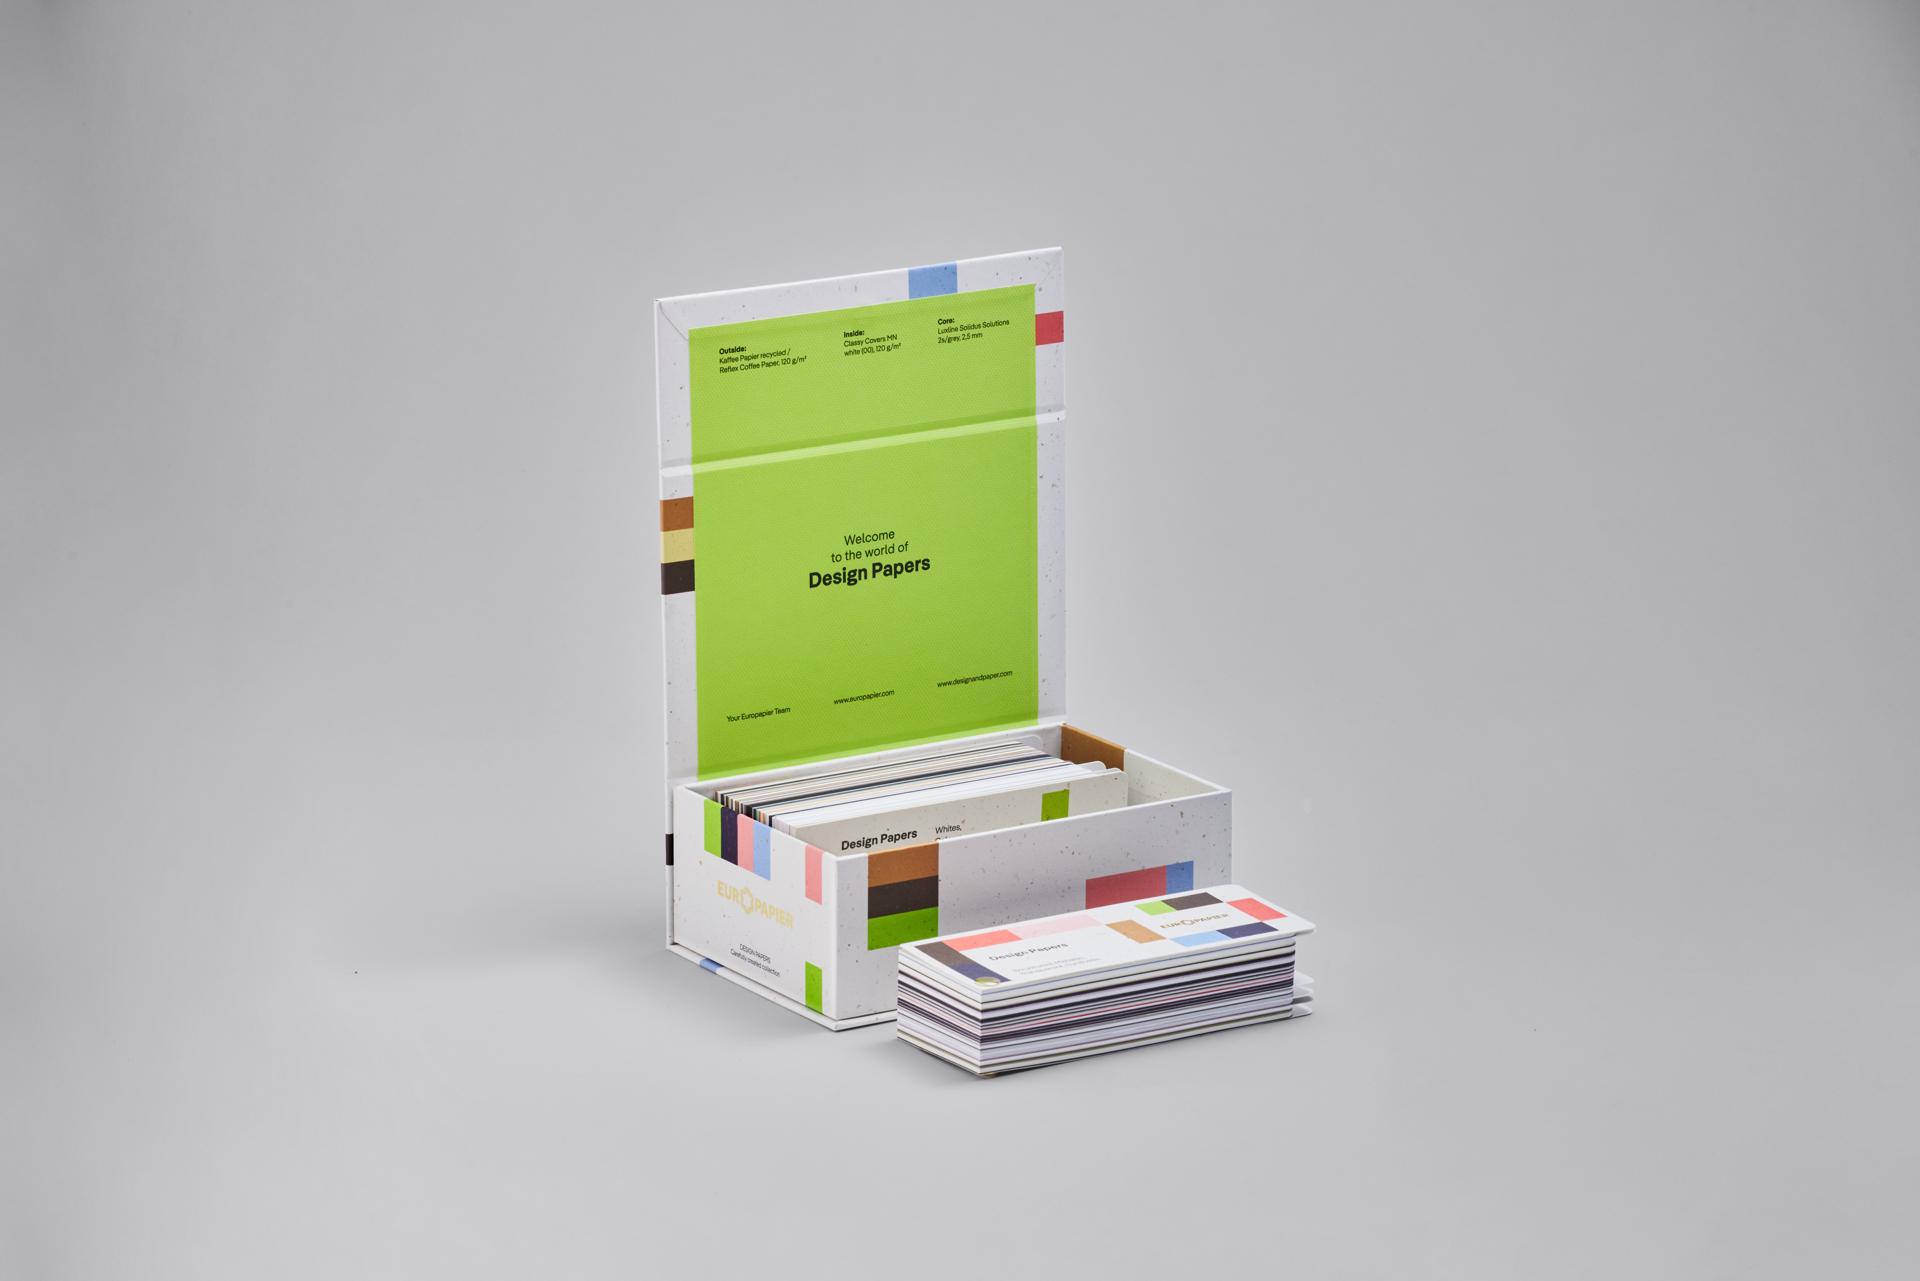 Novy vzorkovnik Design Papers od spolocnosti Europapier